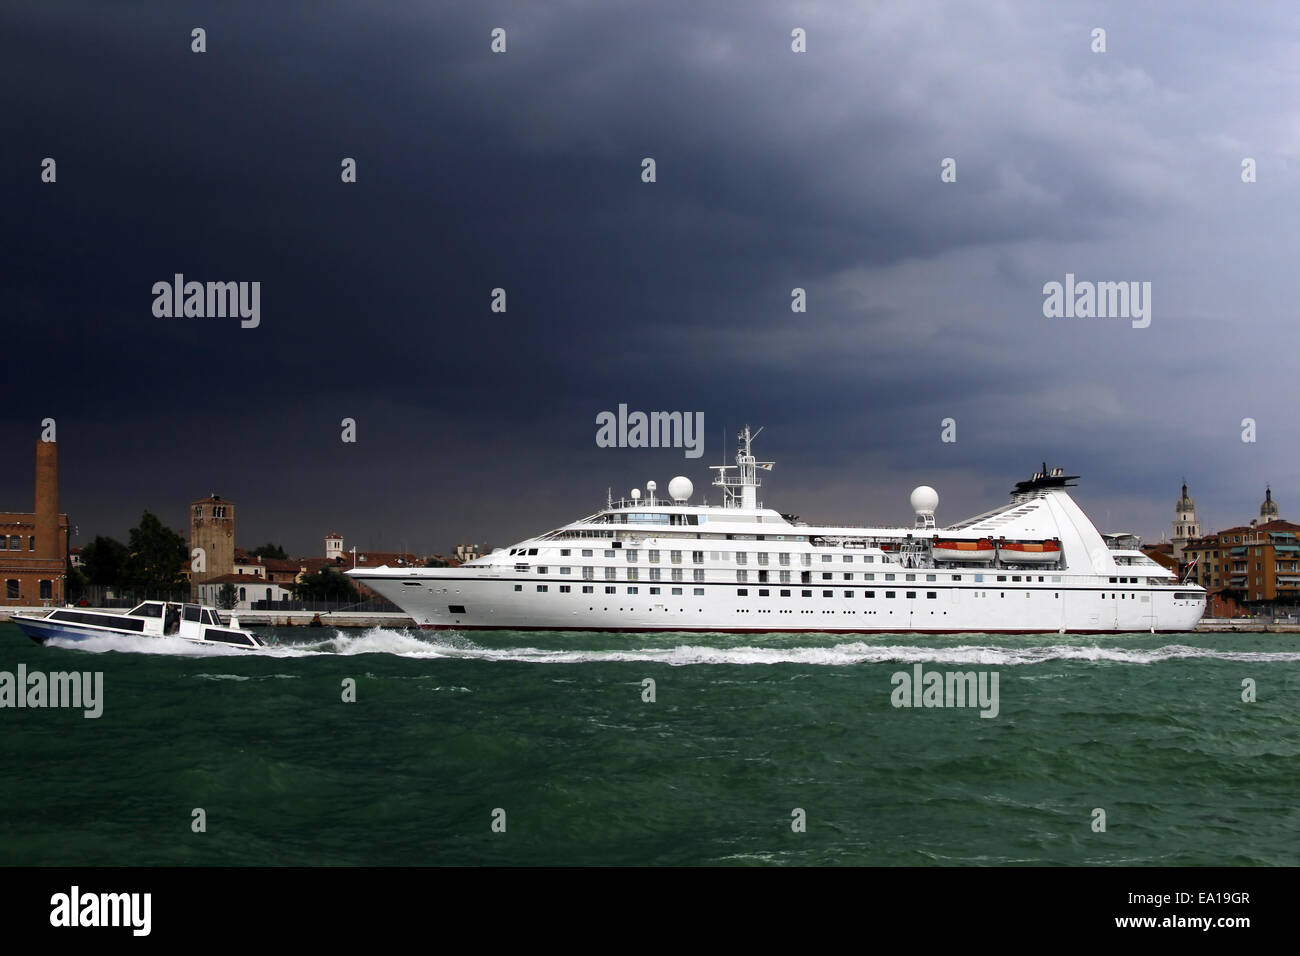 Großes Kreuzfahrtschiff und kleine Wasser-Taxi unter Gewitterhimmel, Venedig, Italien. Metapher des Wettbewerbs zwischen großen und kleinen Unternehmen Stockfoto